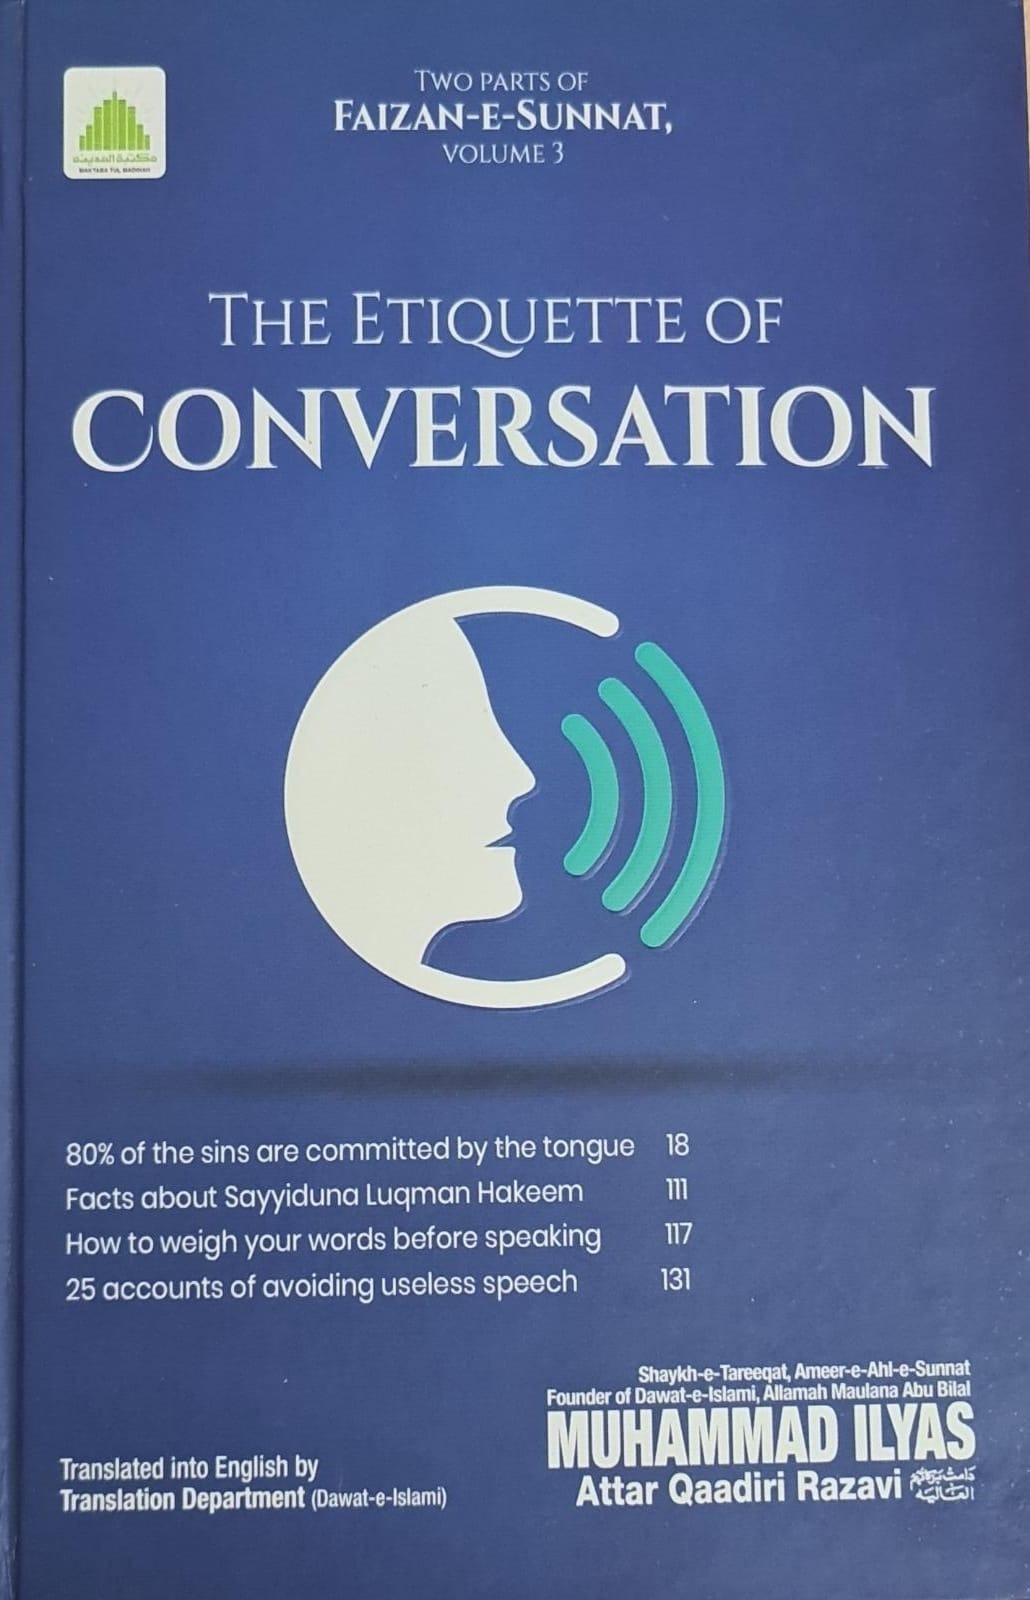  The Etiquette of Conversation